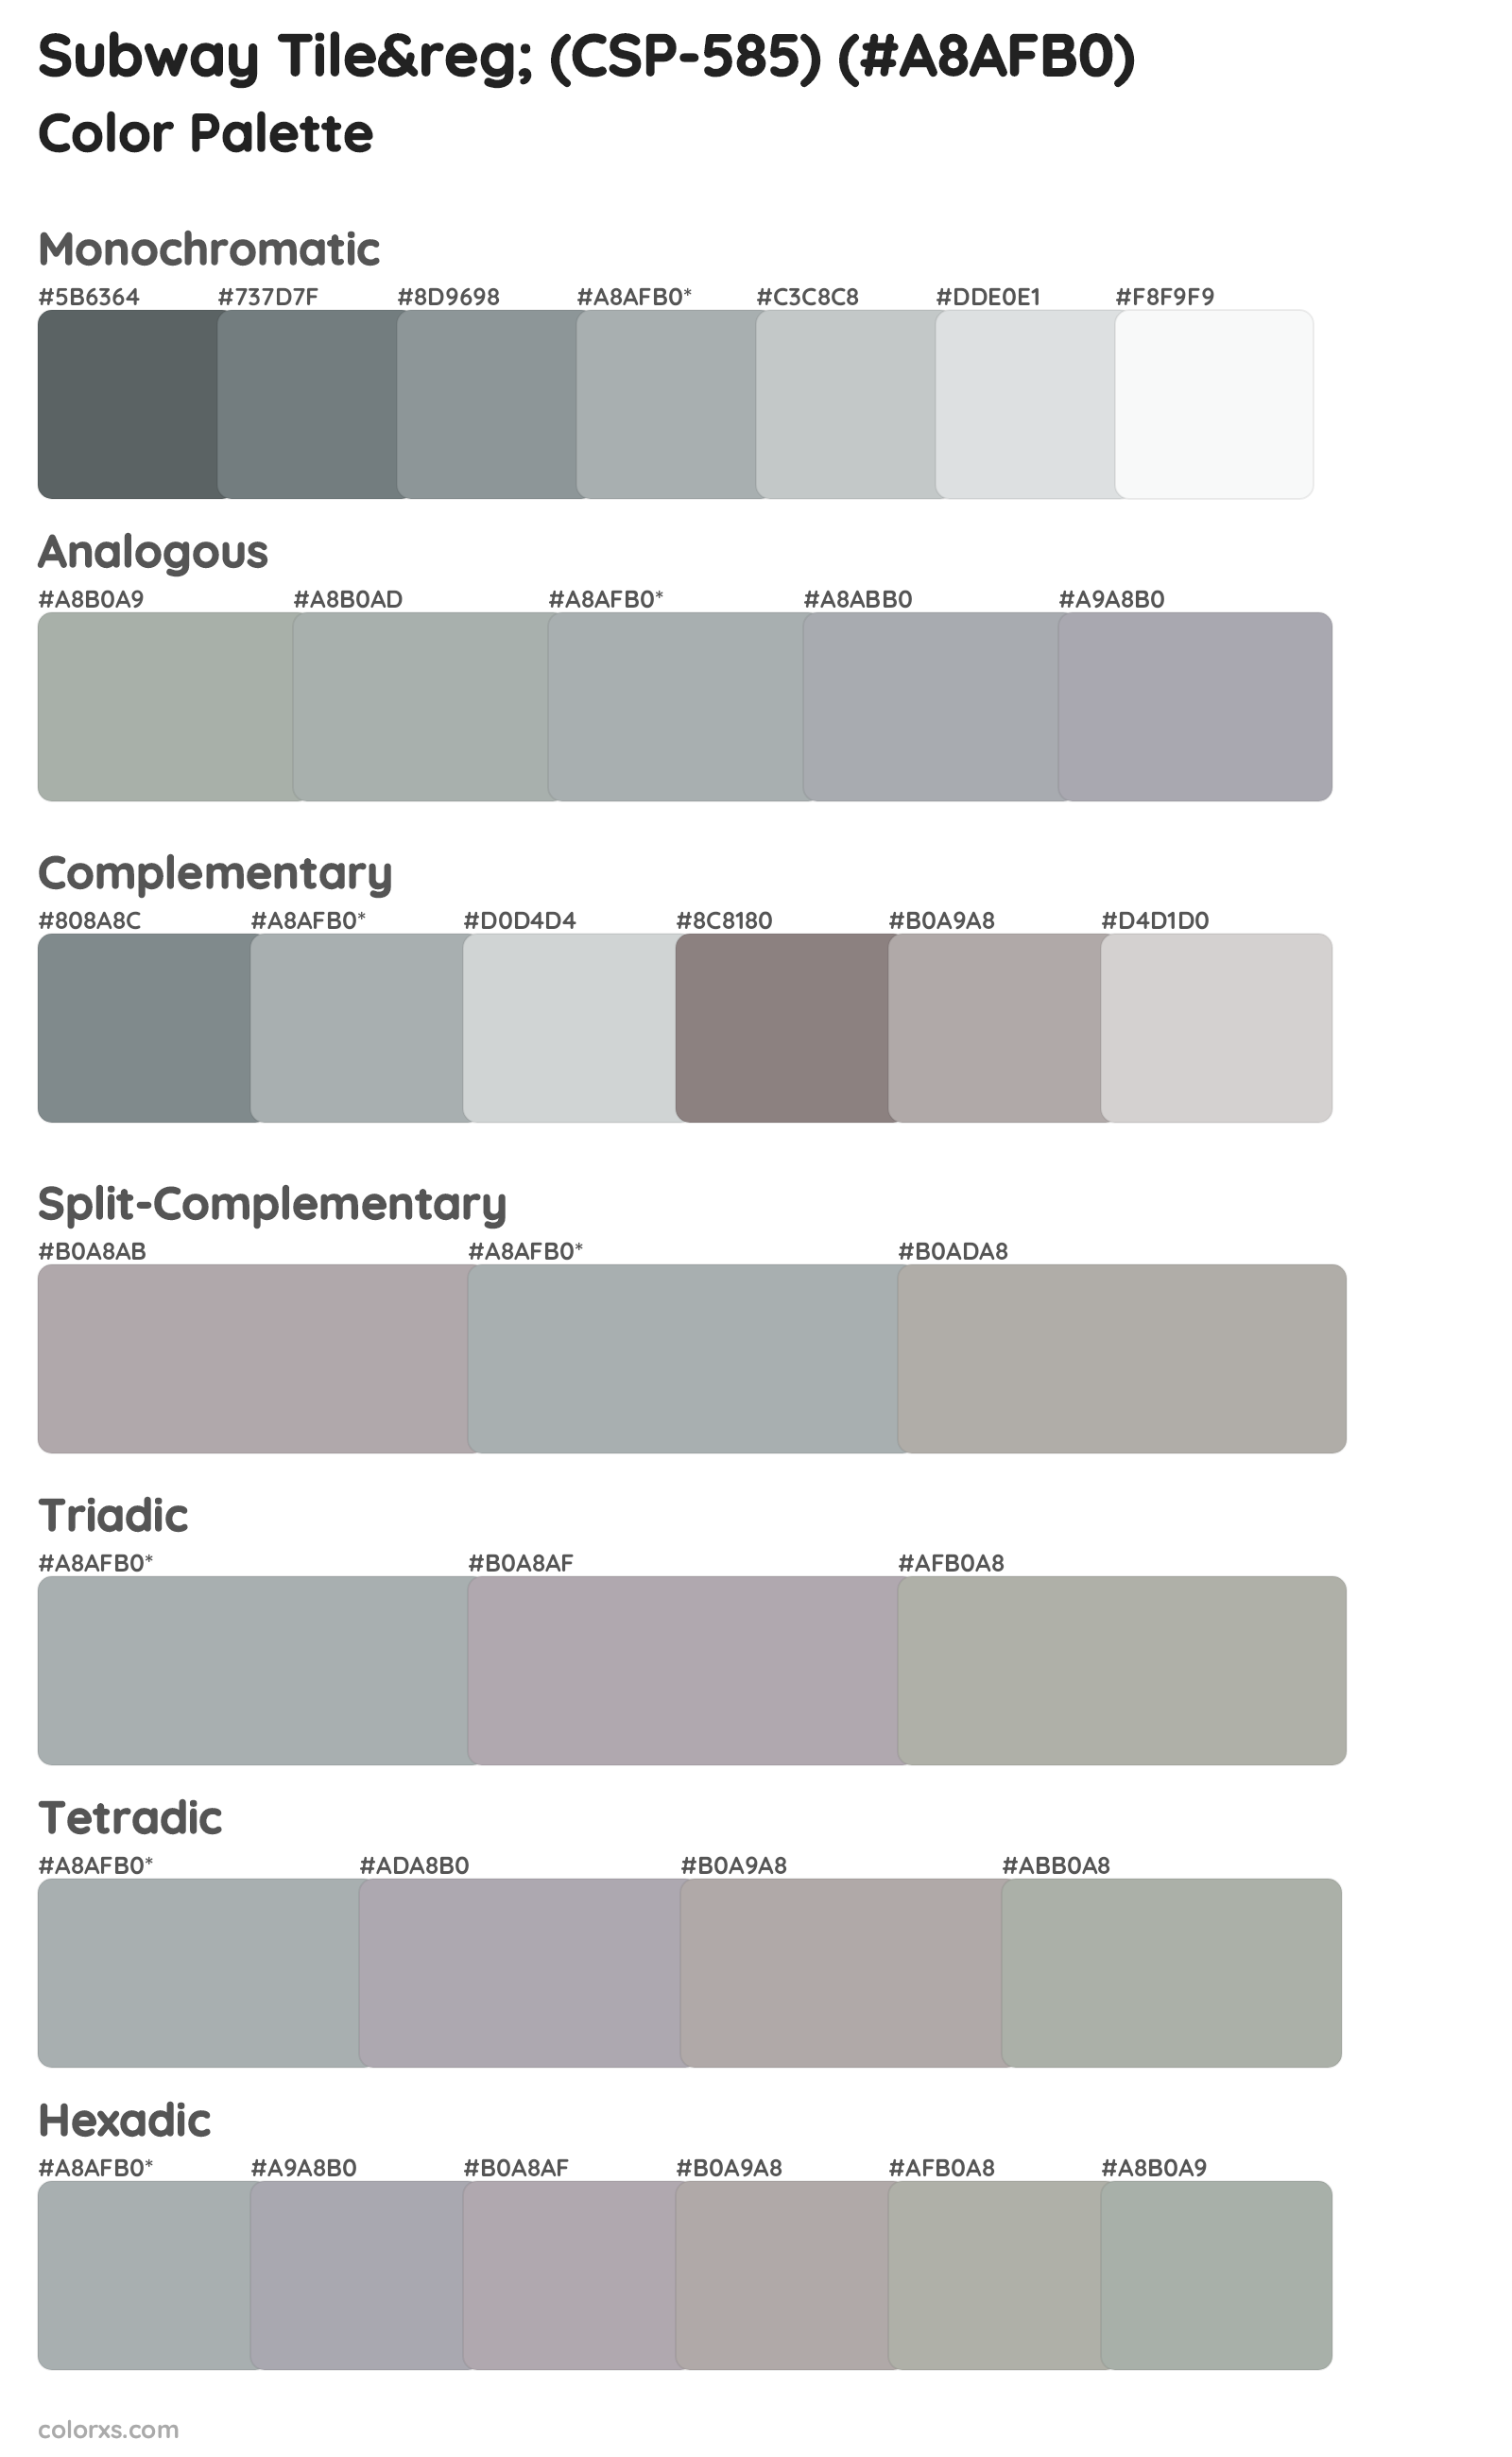 Subway Tile&reg; (CSP-585) Color Scheme Palettes